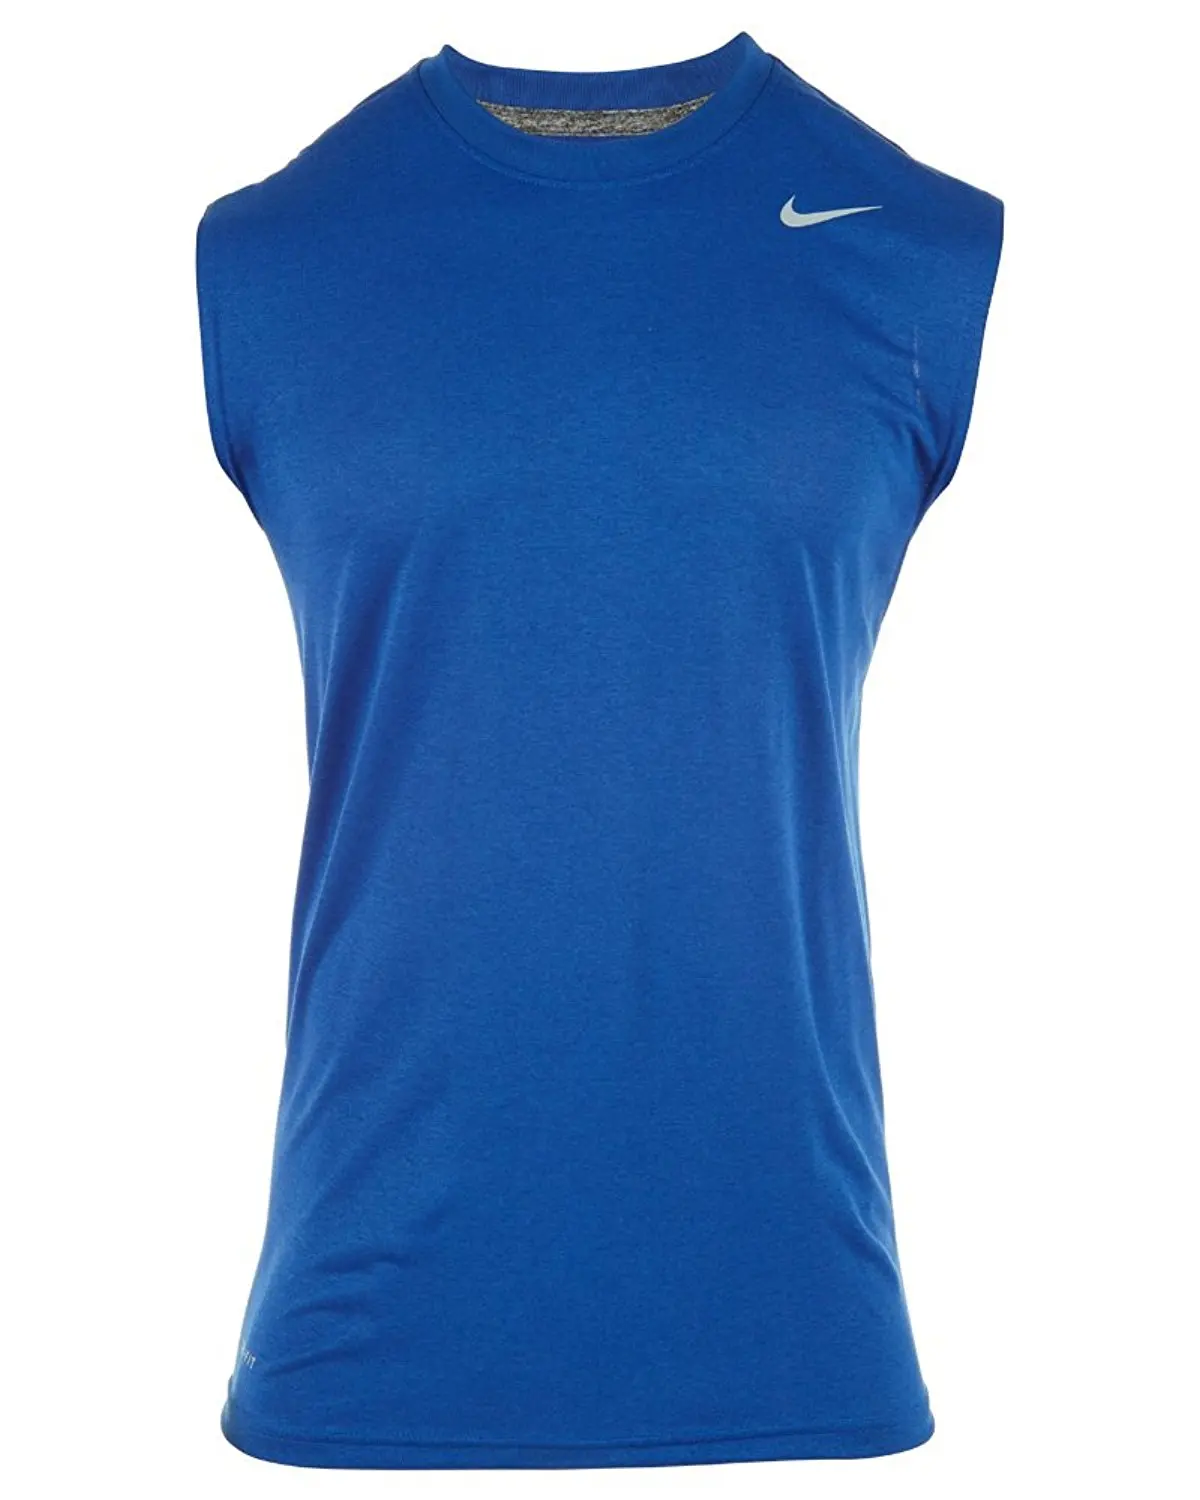 women's sleeveless dri fit shirts